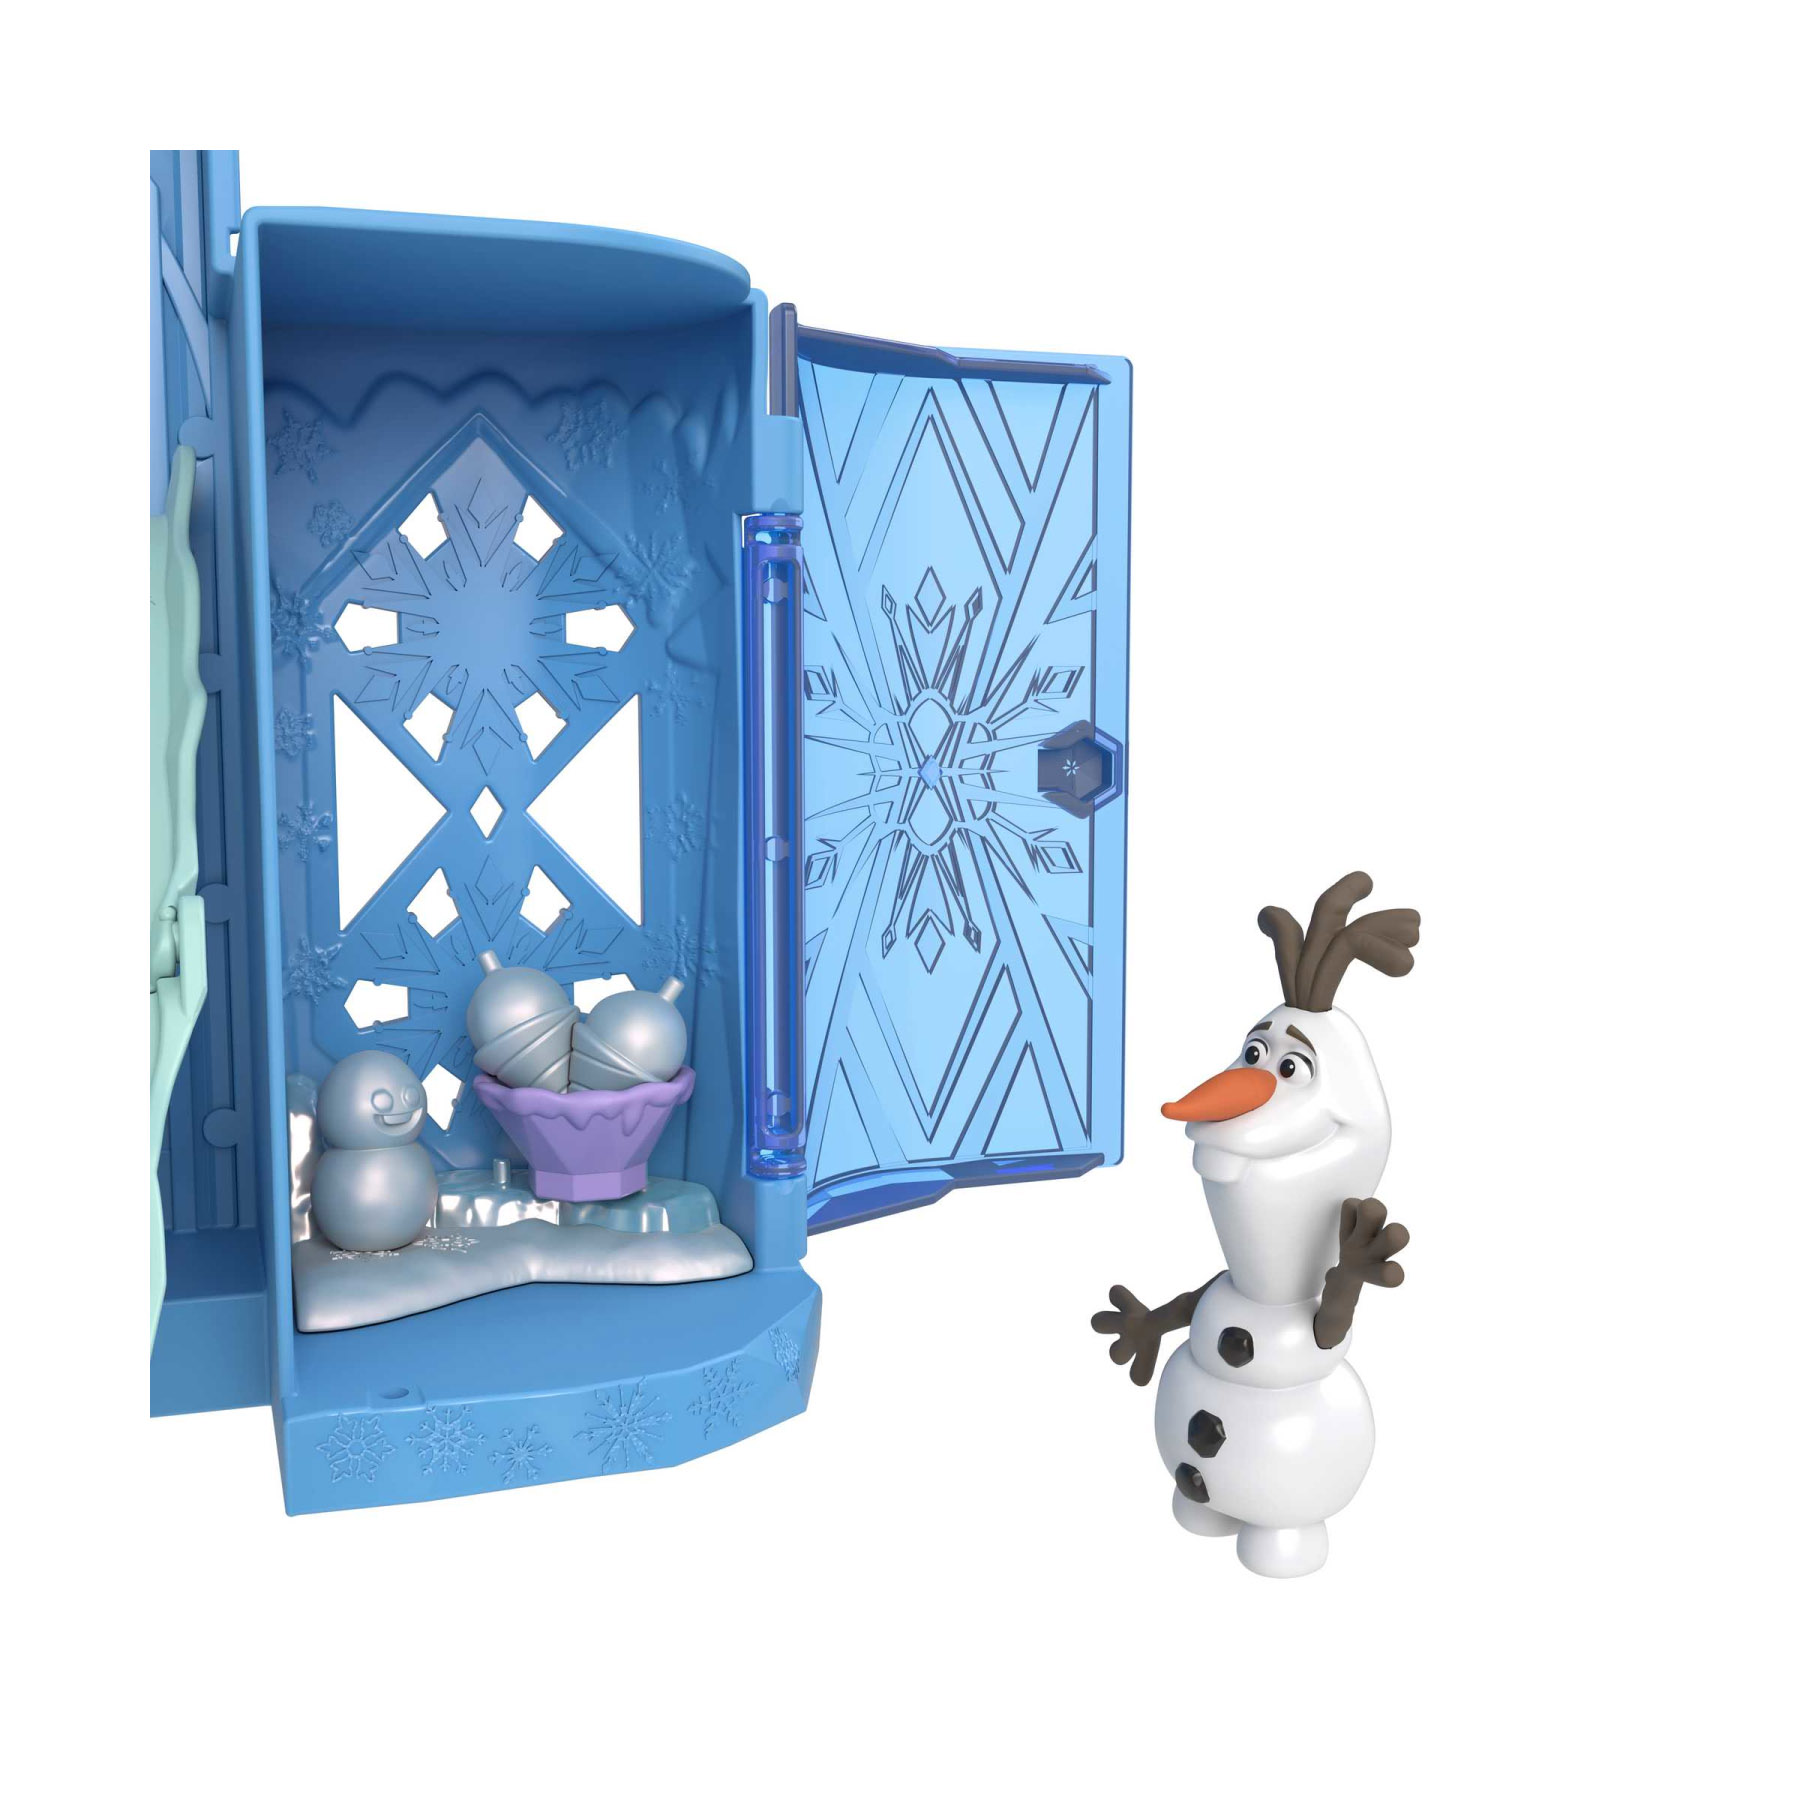 Set Componibili Palazzo di Ghiaccio di Elsa, Playset con Mini Bambola Elsa,  Olaf e accessori, Disney Frozen in Vendita Online